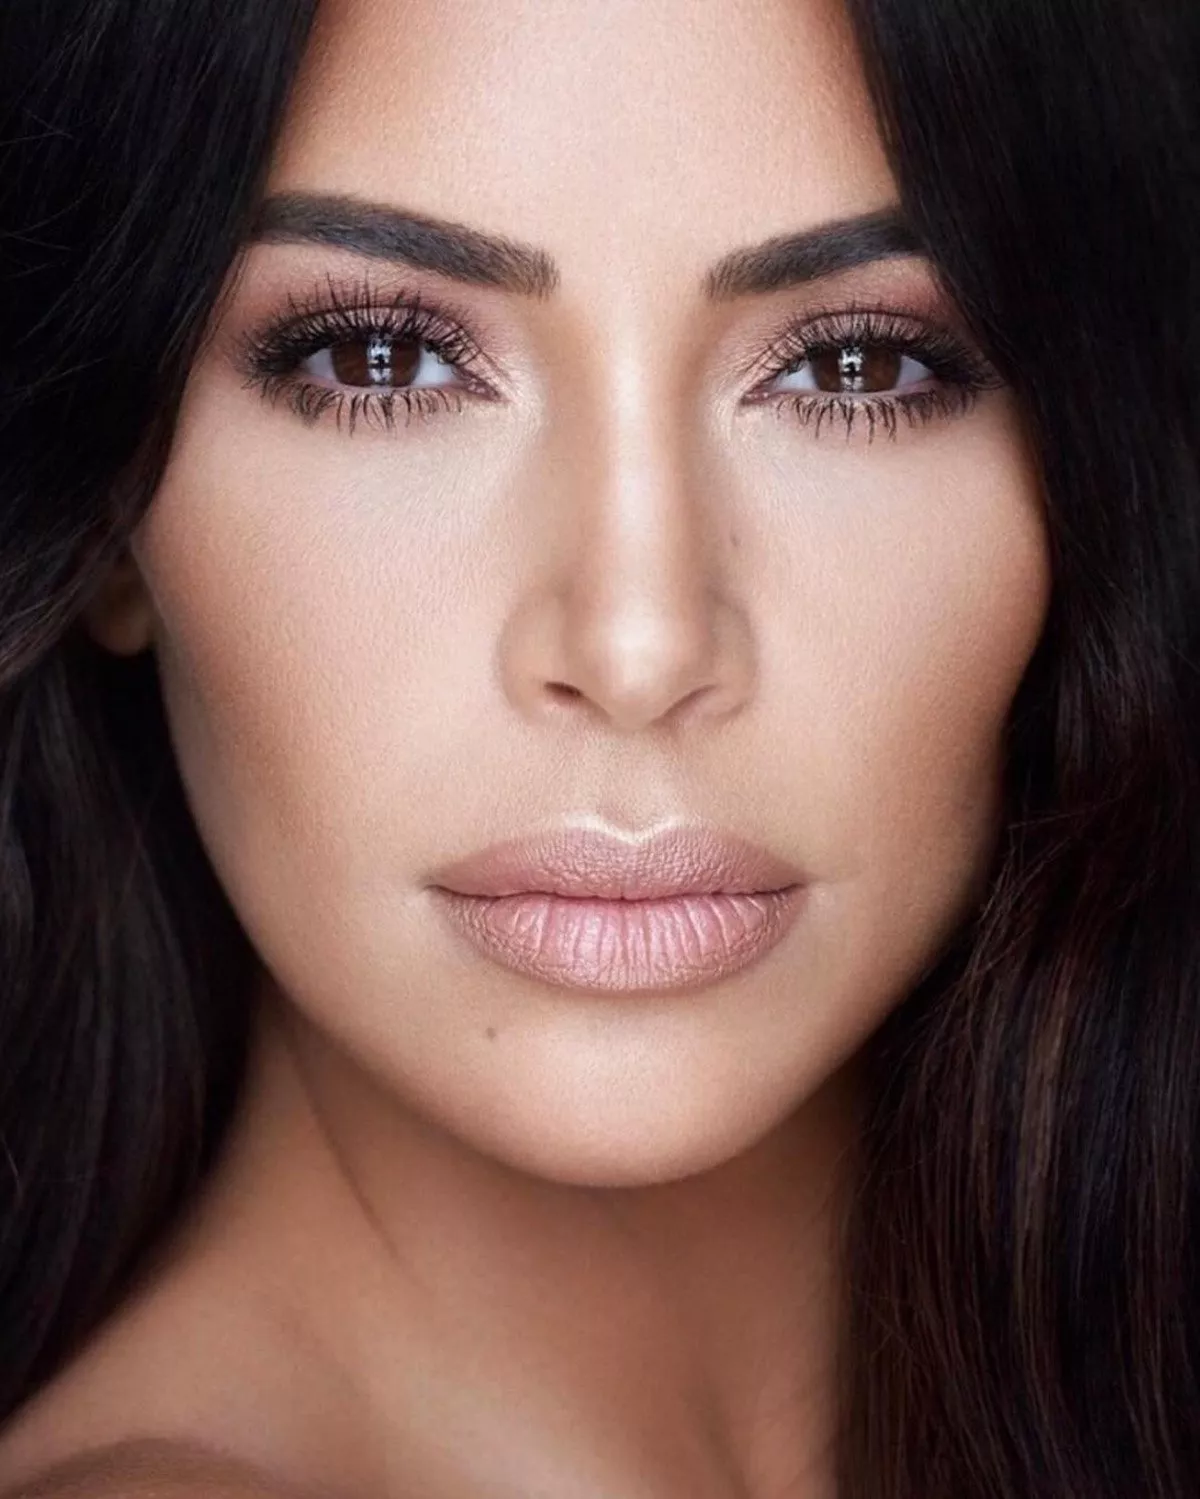 حيلة Kim Kardashian للحصول على رموش طويلة وكثيفة فوراً: الكونسيلر!